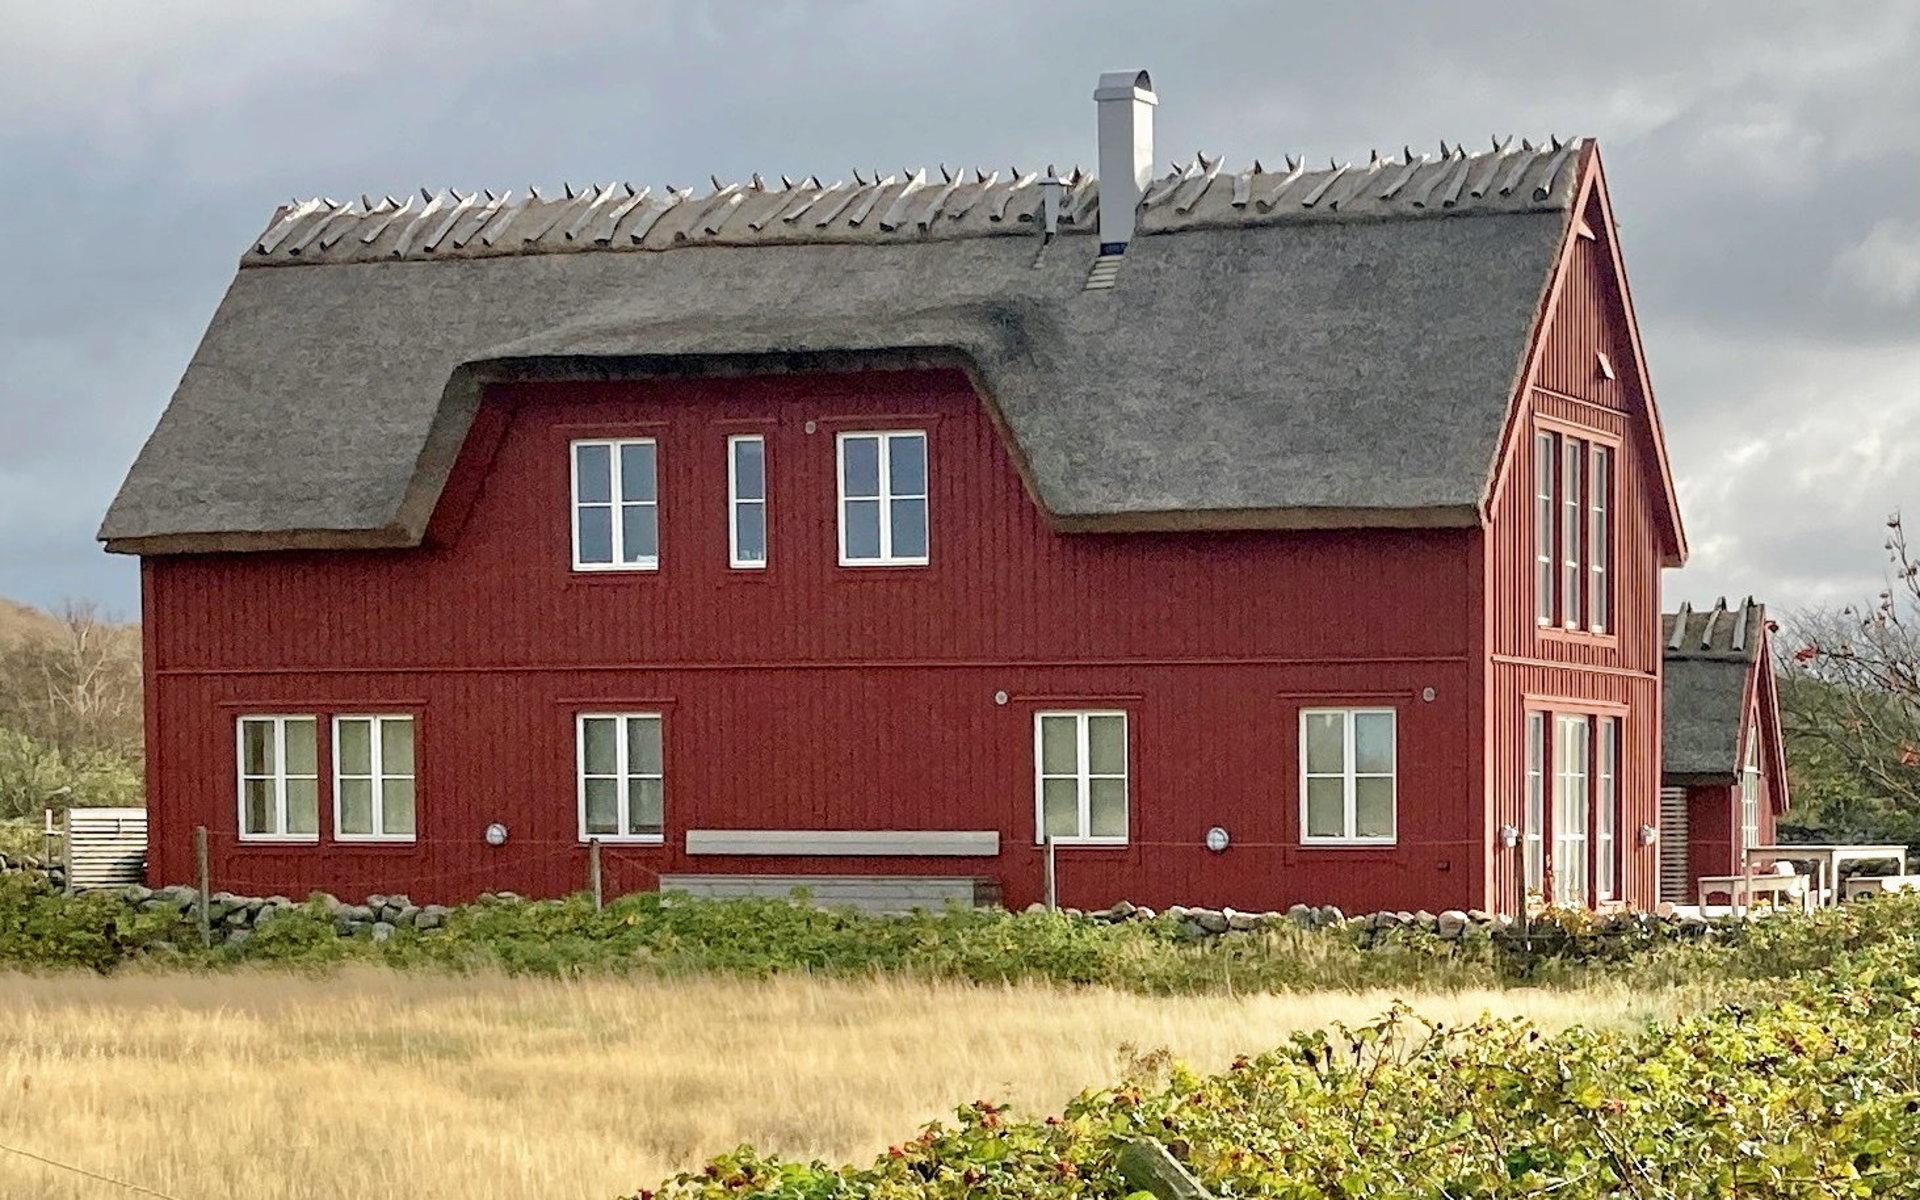 Det slutliga resultatet, med förhöjt väggliv och förstorad takkupa liknar inte alls de ursprungliga ritningarna på en Hallandslänga.